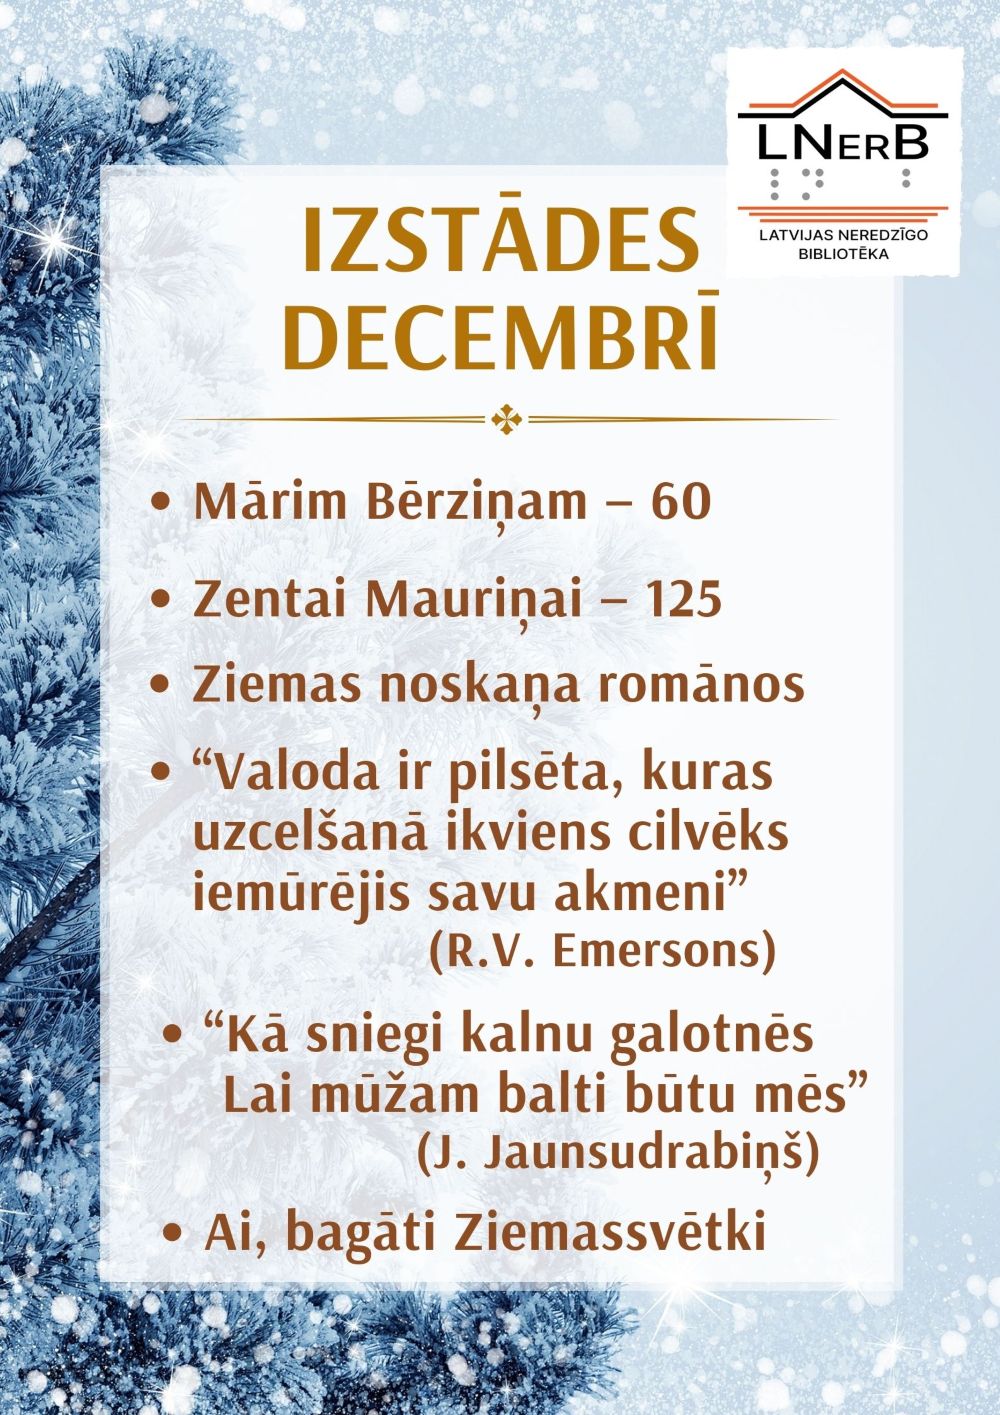 Plakāts izstādei "Izstādes decembrī bibliotēkā Rīgā!"